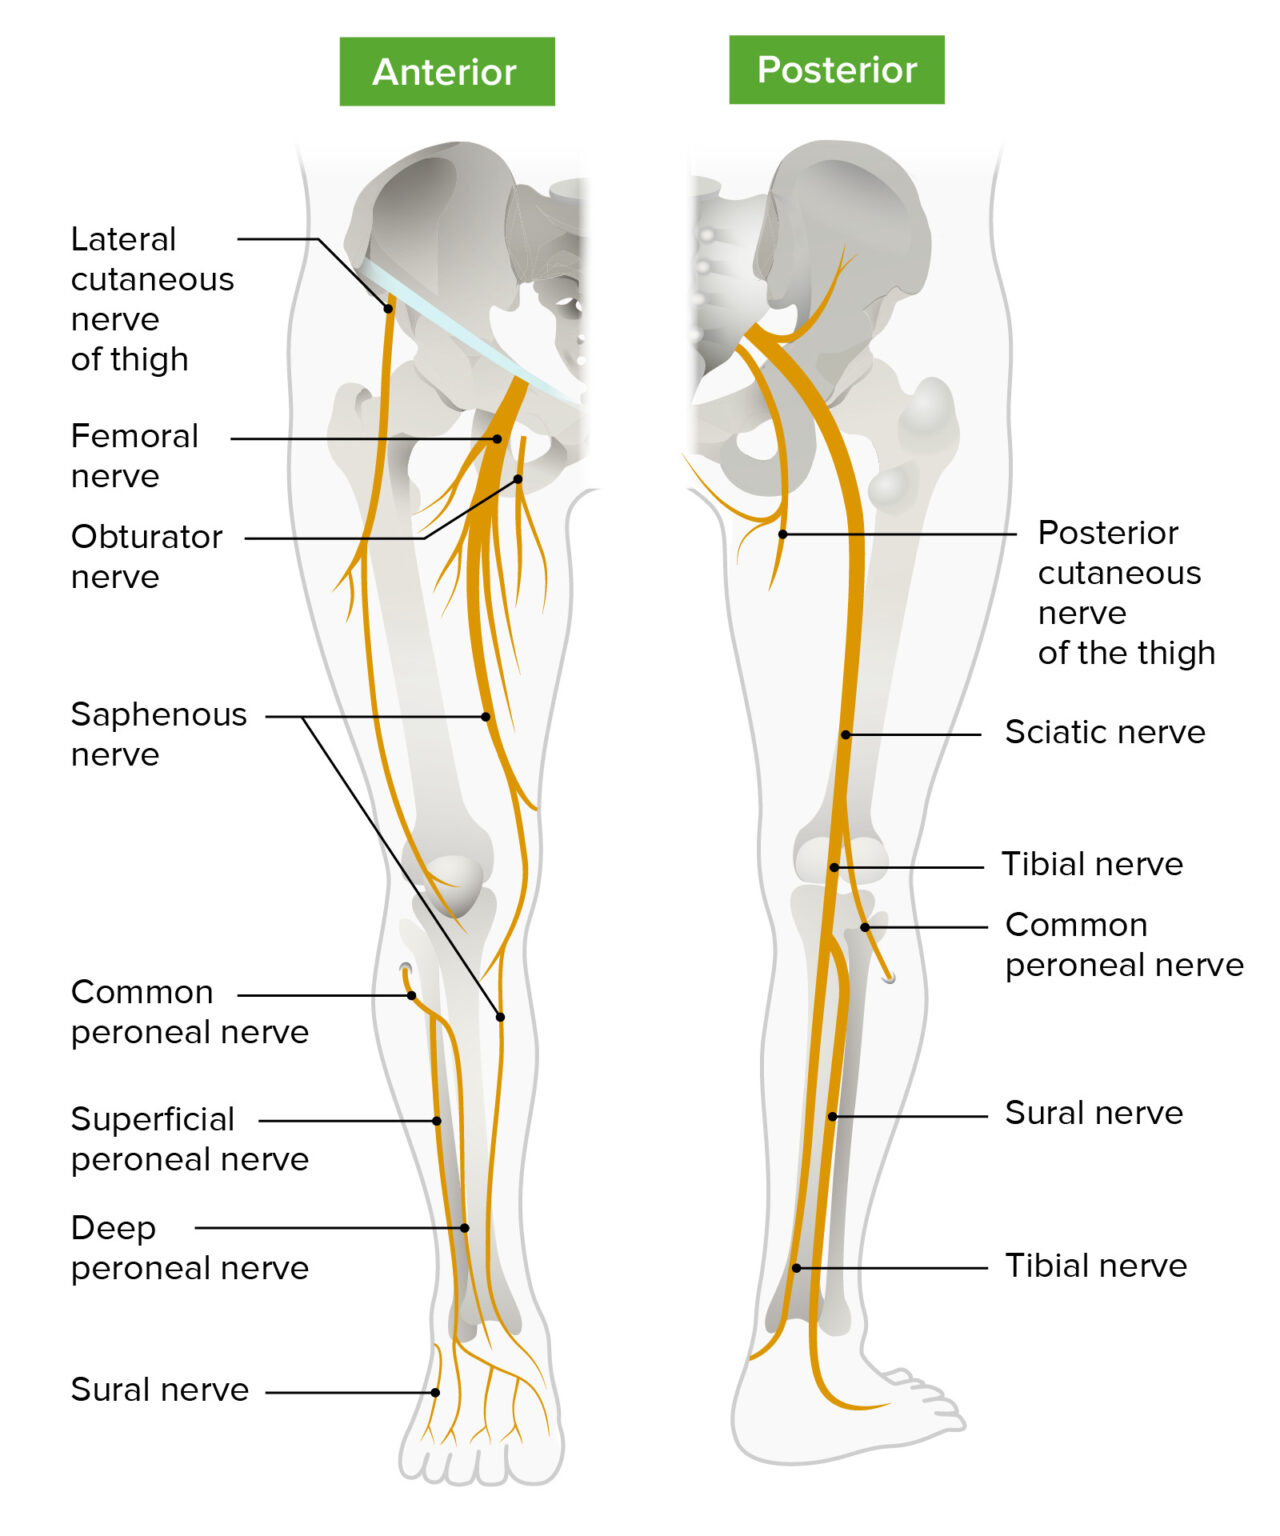 anterior compartment of leg nerve